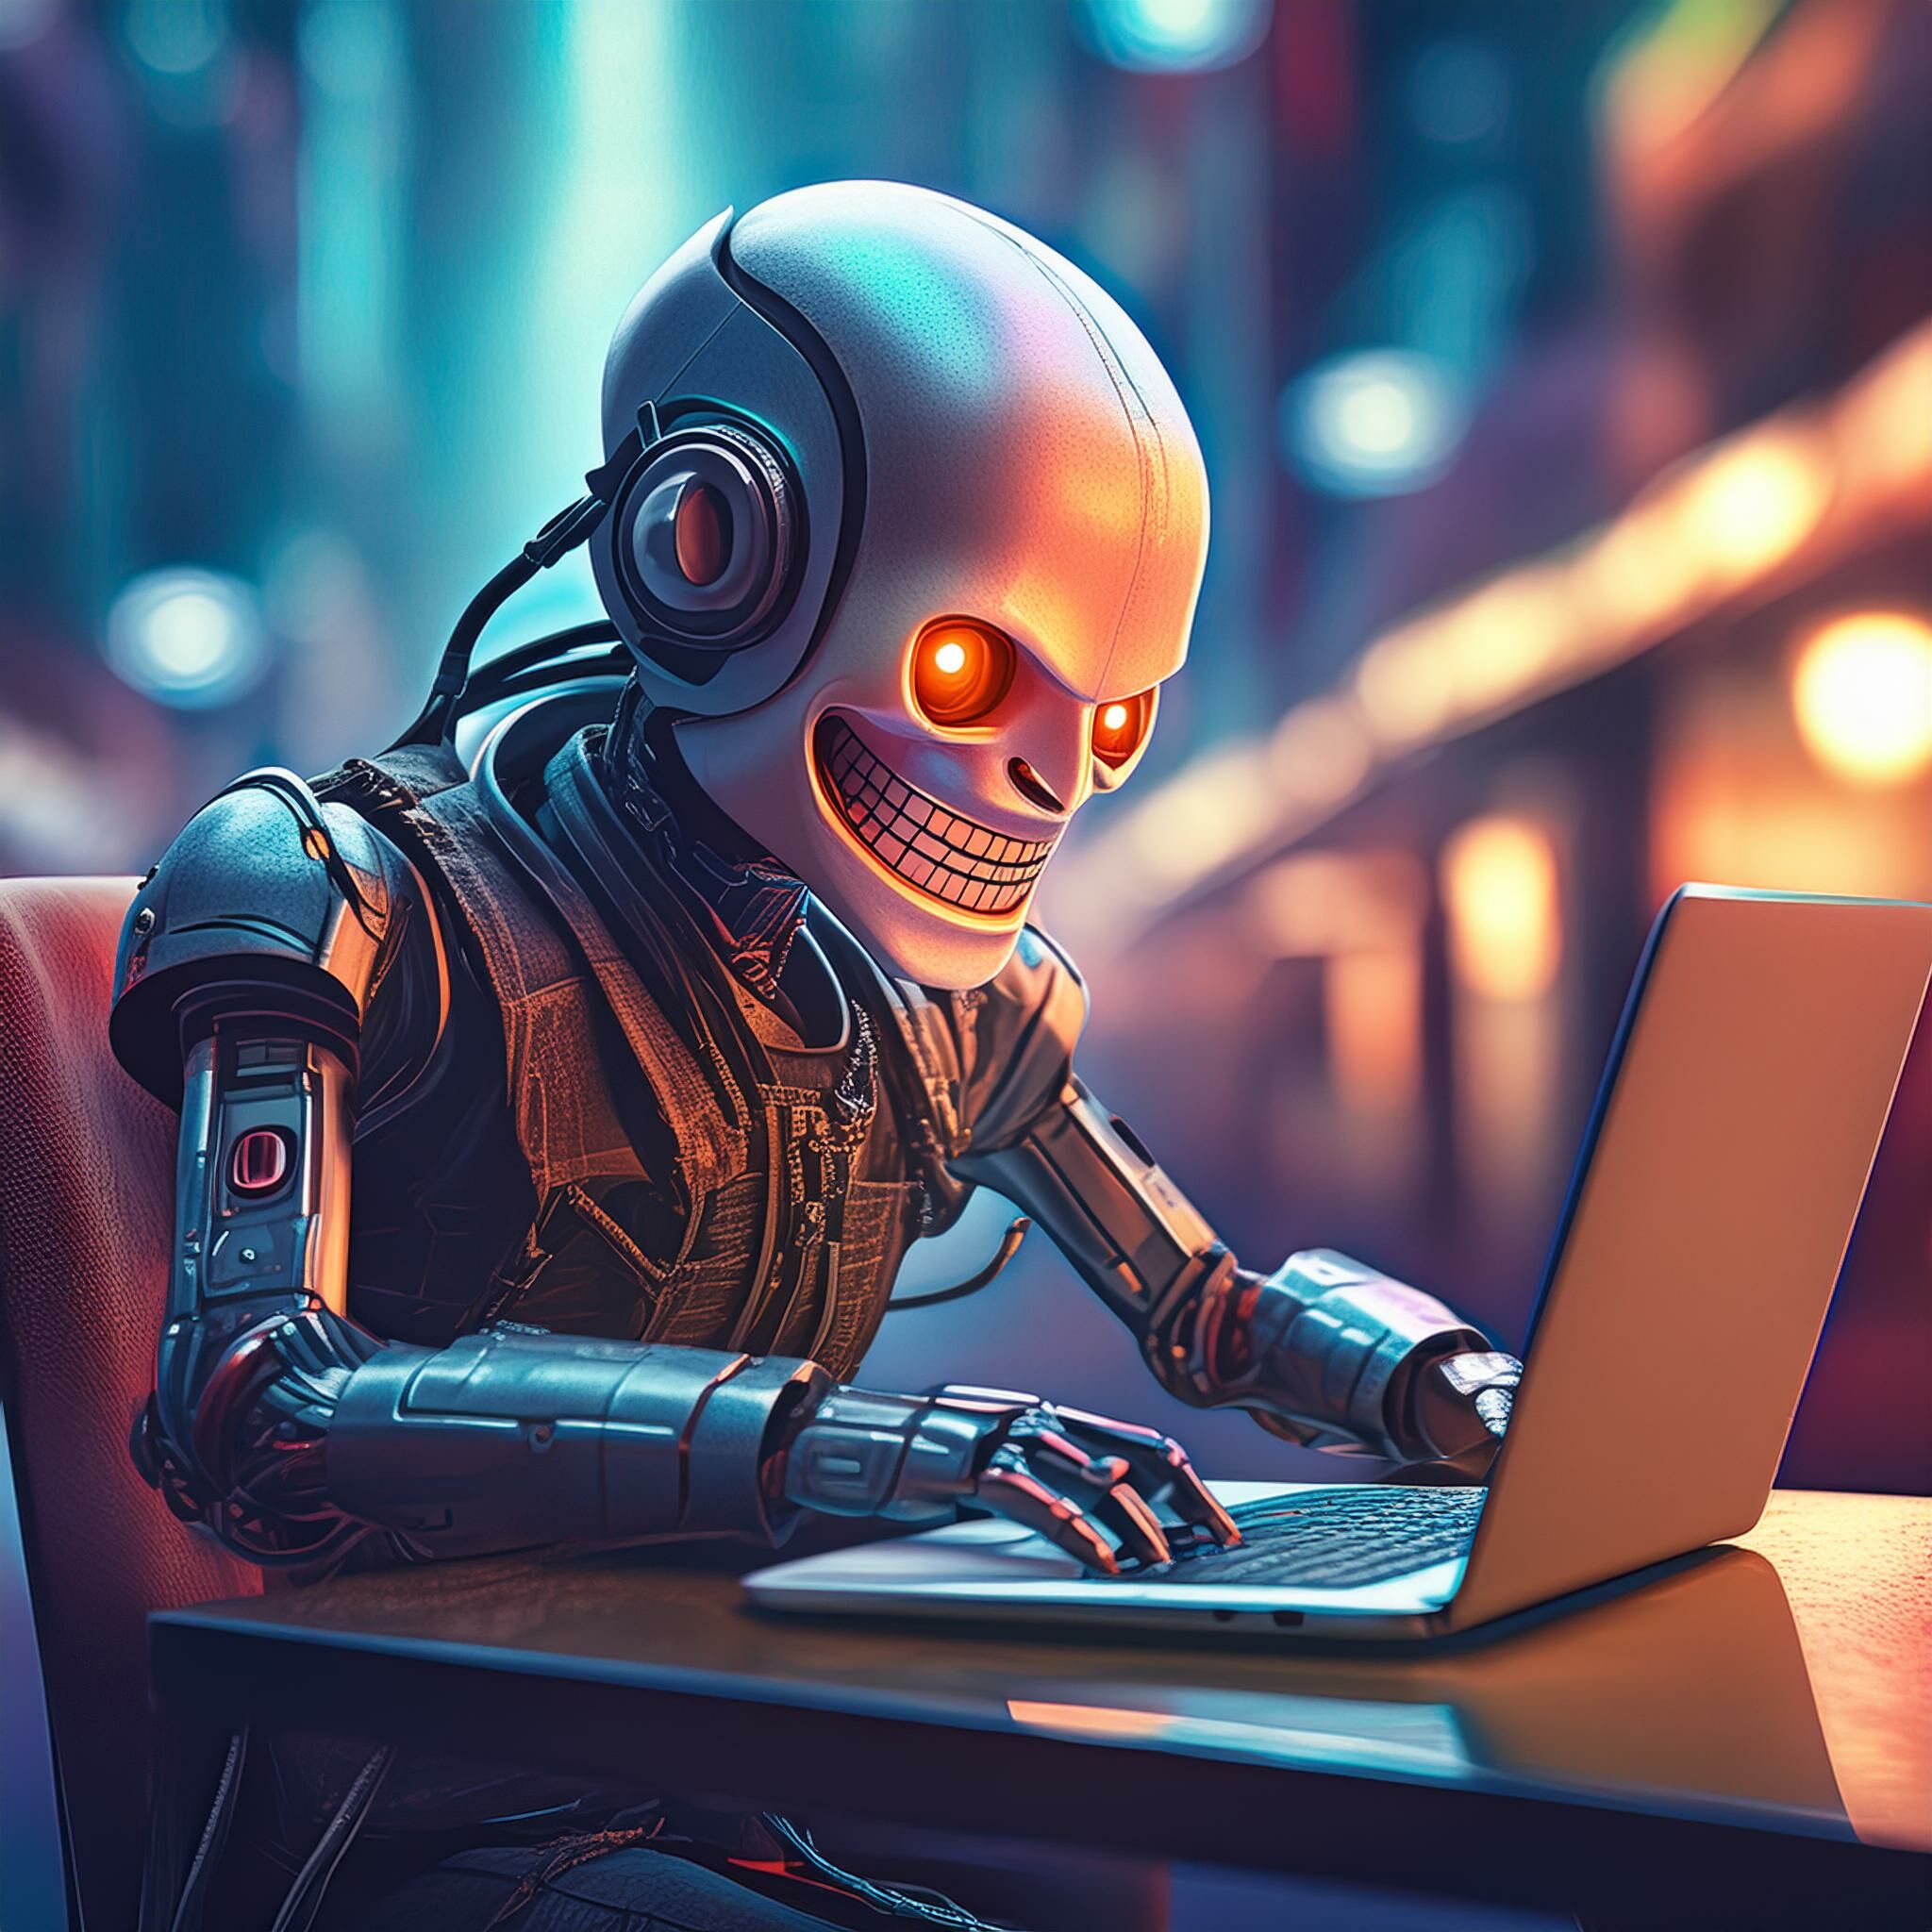 Ein unheimlicher, grinsender Roboter sitzt hinter einem Laptop und tippt. Die Augen des Roboters leuchten bedrohlich, und die Szene spielt in einem schwach beleuchteten Raum mit einer leicht unheimlichen Atmosphäre.